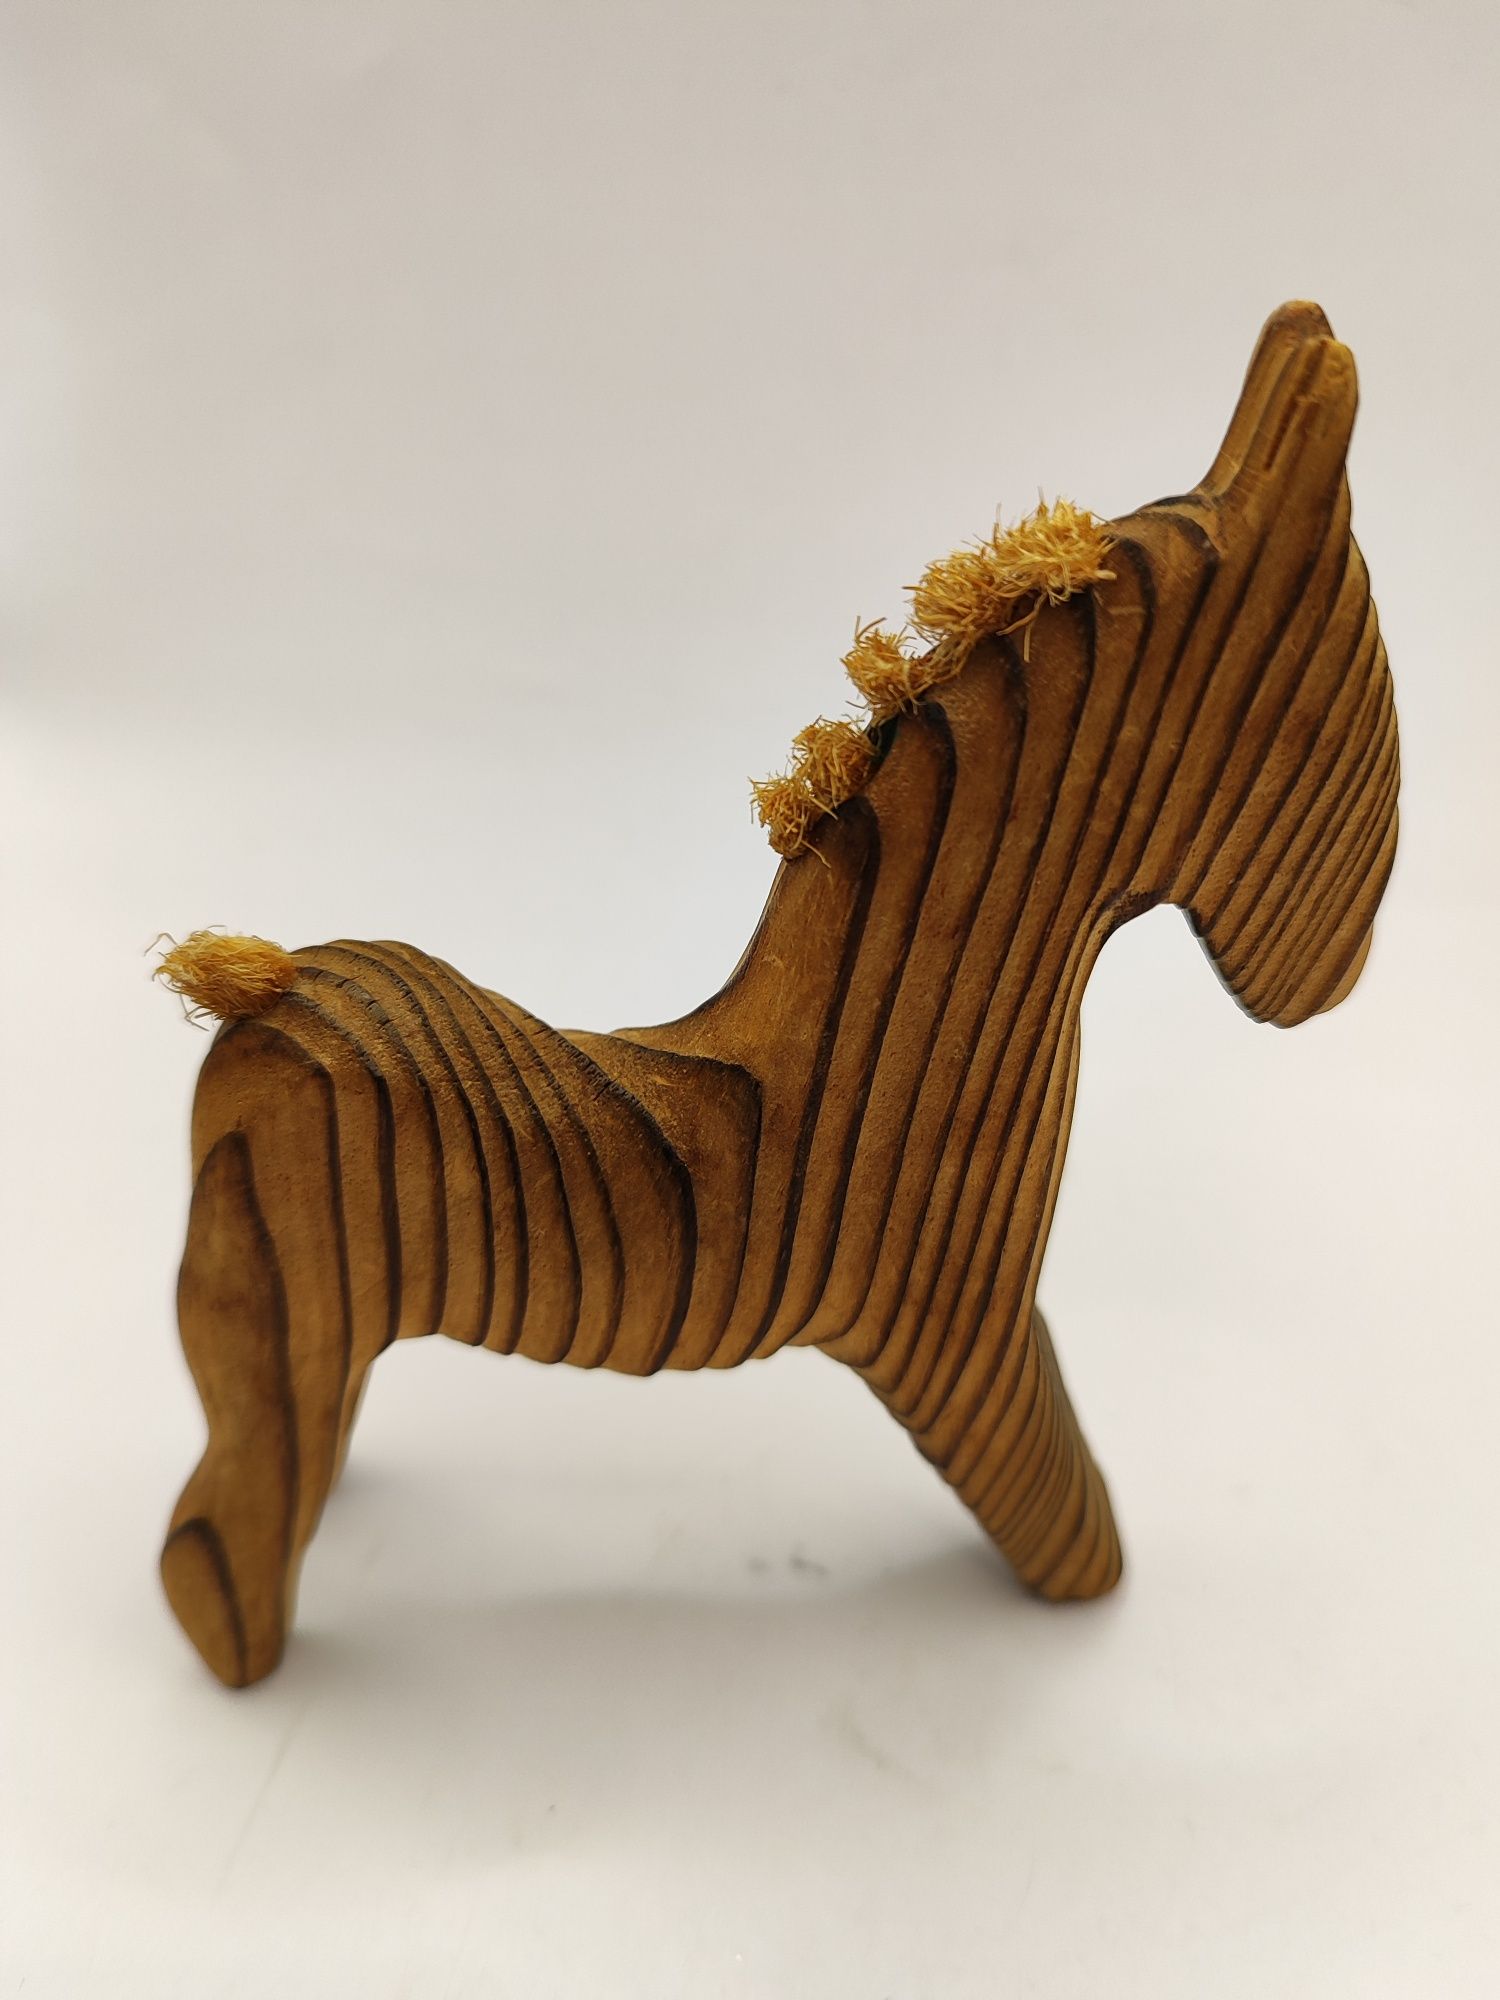 Drewniany koń rzeźba Szwecja Nils Strandin zabytek